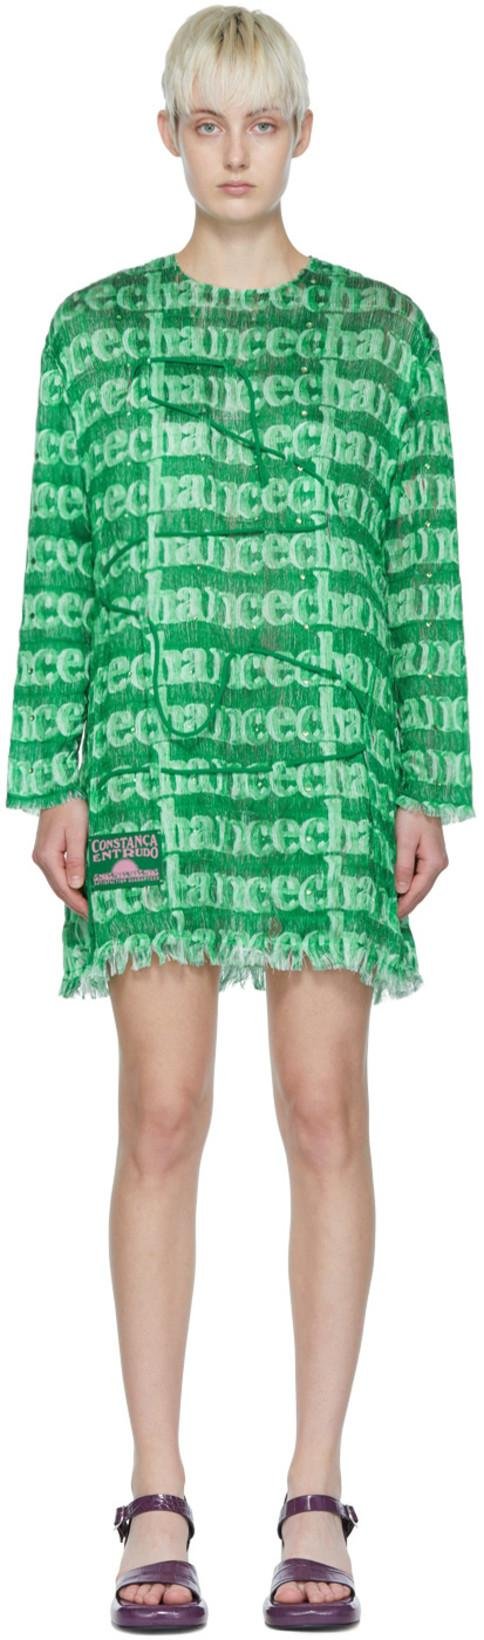 Green Beaded Cord Dress by CONSTANCA ENTRUDO